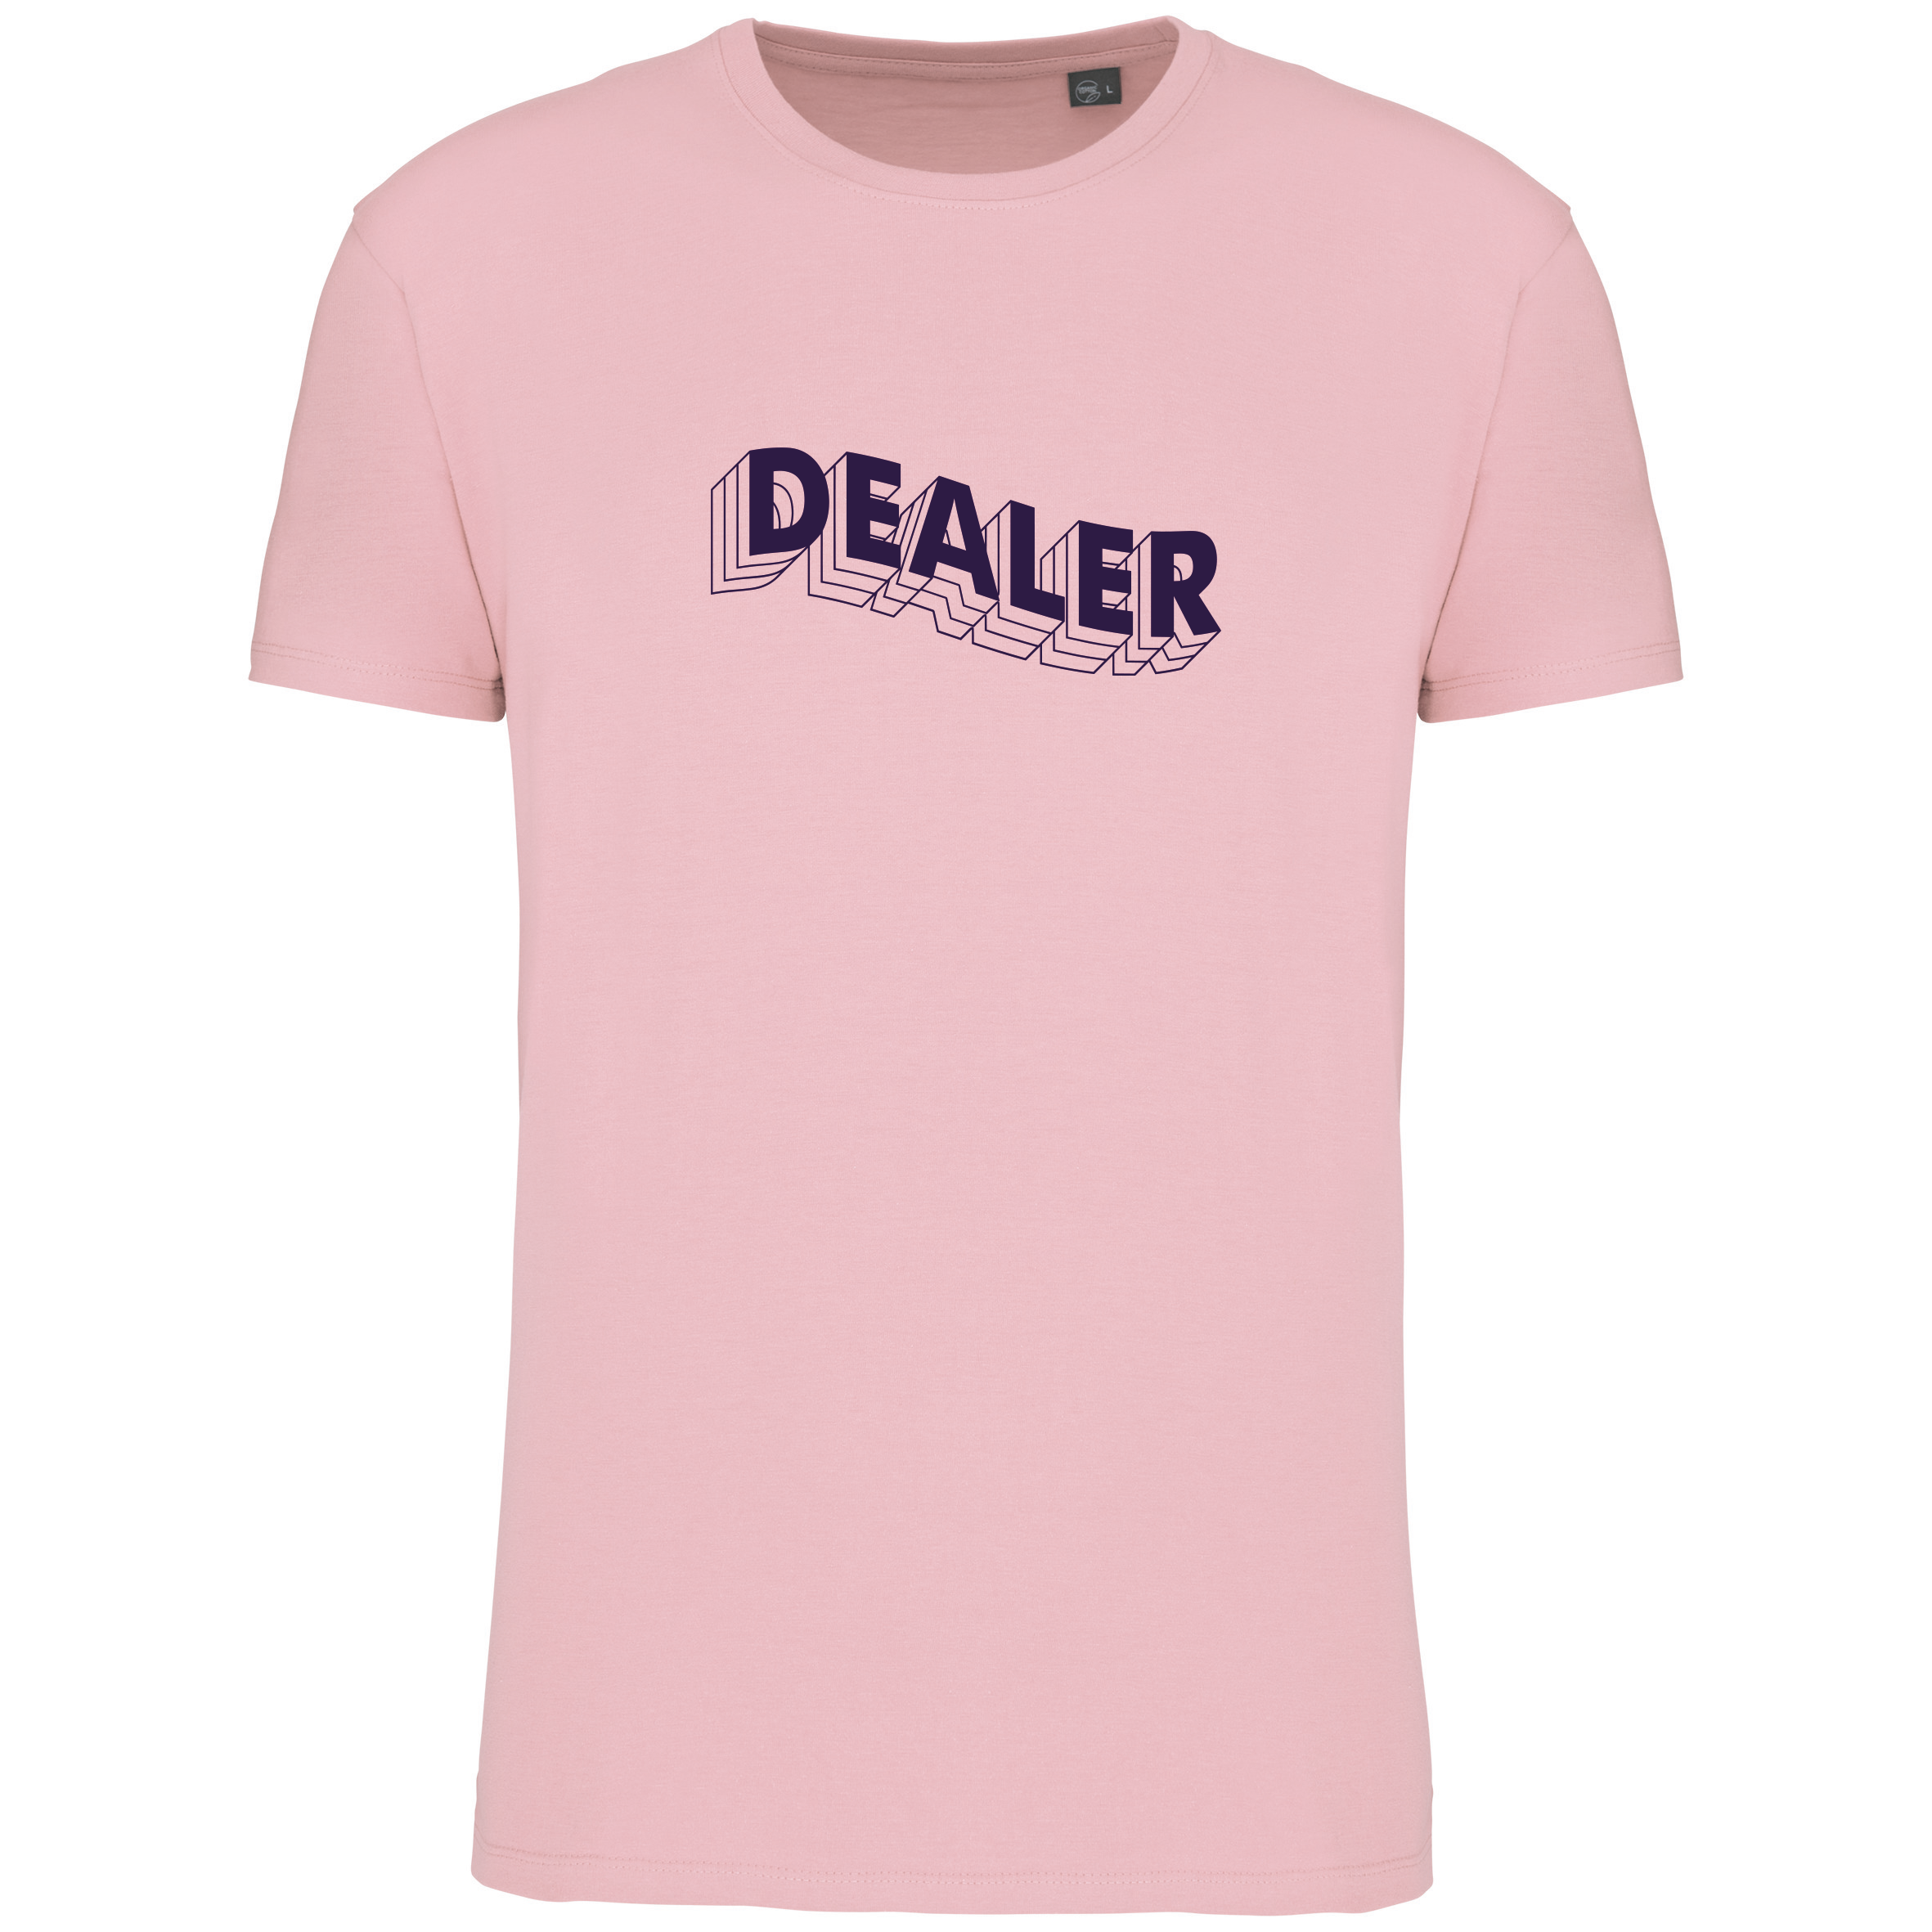 Dealer - T-Shirt